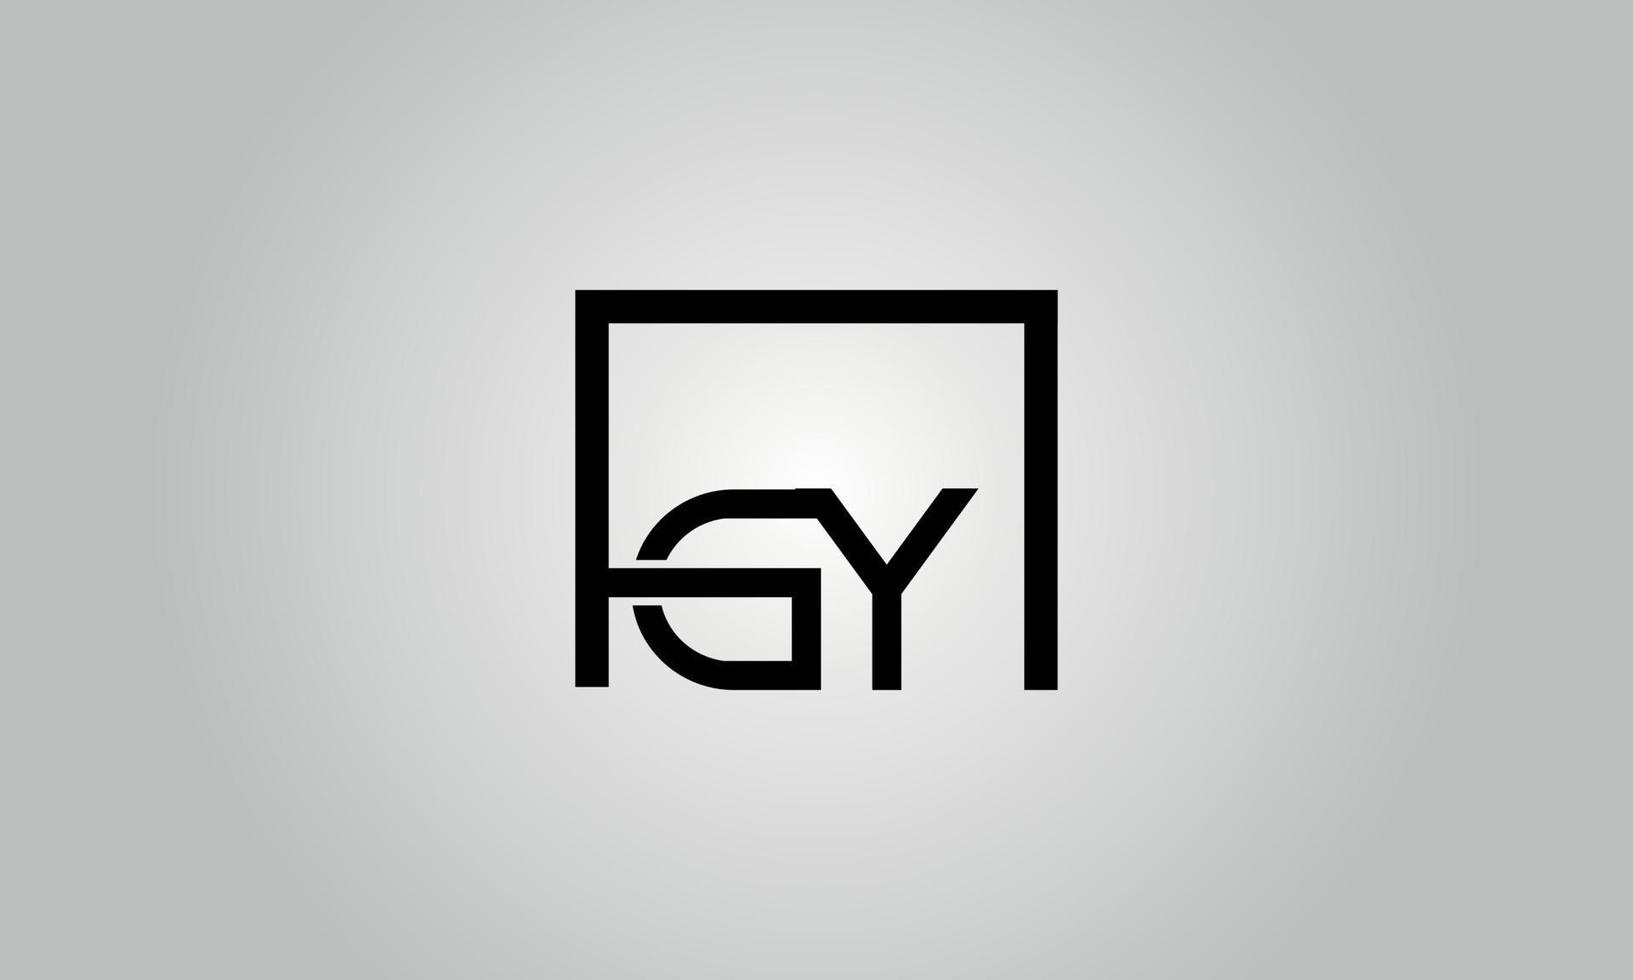 design de logotipo de carta gy. gy logotipo com forma quadrada em cores pretas modelo de vetor livre.